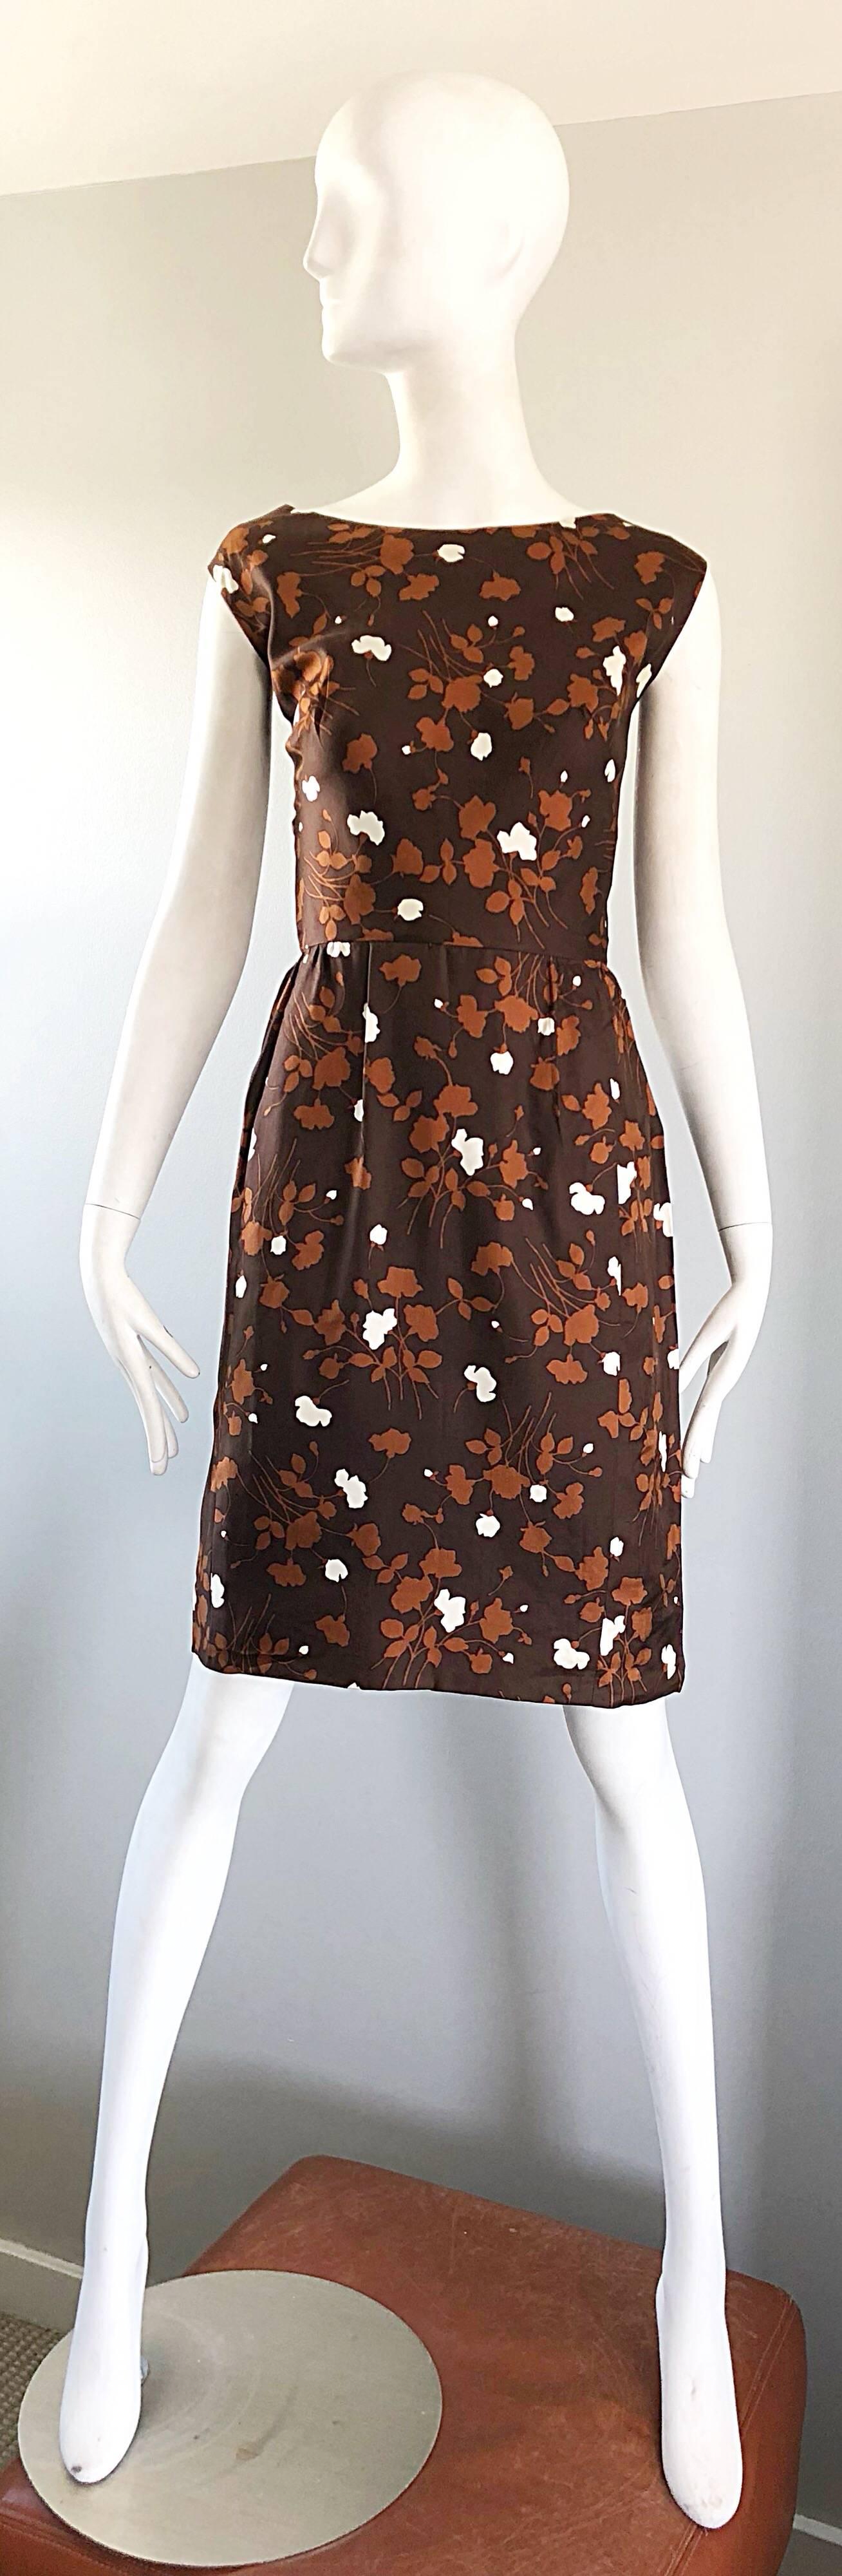 Ensemble robe et veste d'automne chic des années 1960 en soie marron, rouille et blanche ! La robe présente un corsage ajusté et une jupe souple. Fermeture à glissière entièrement métallique dans le dos avec fermeture à bouton. Poches de chaque côté